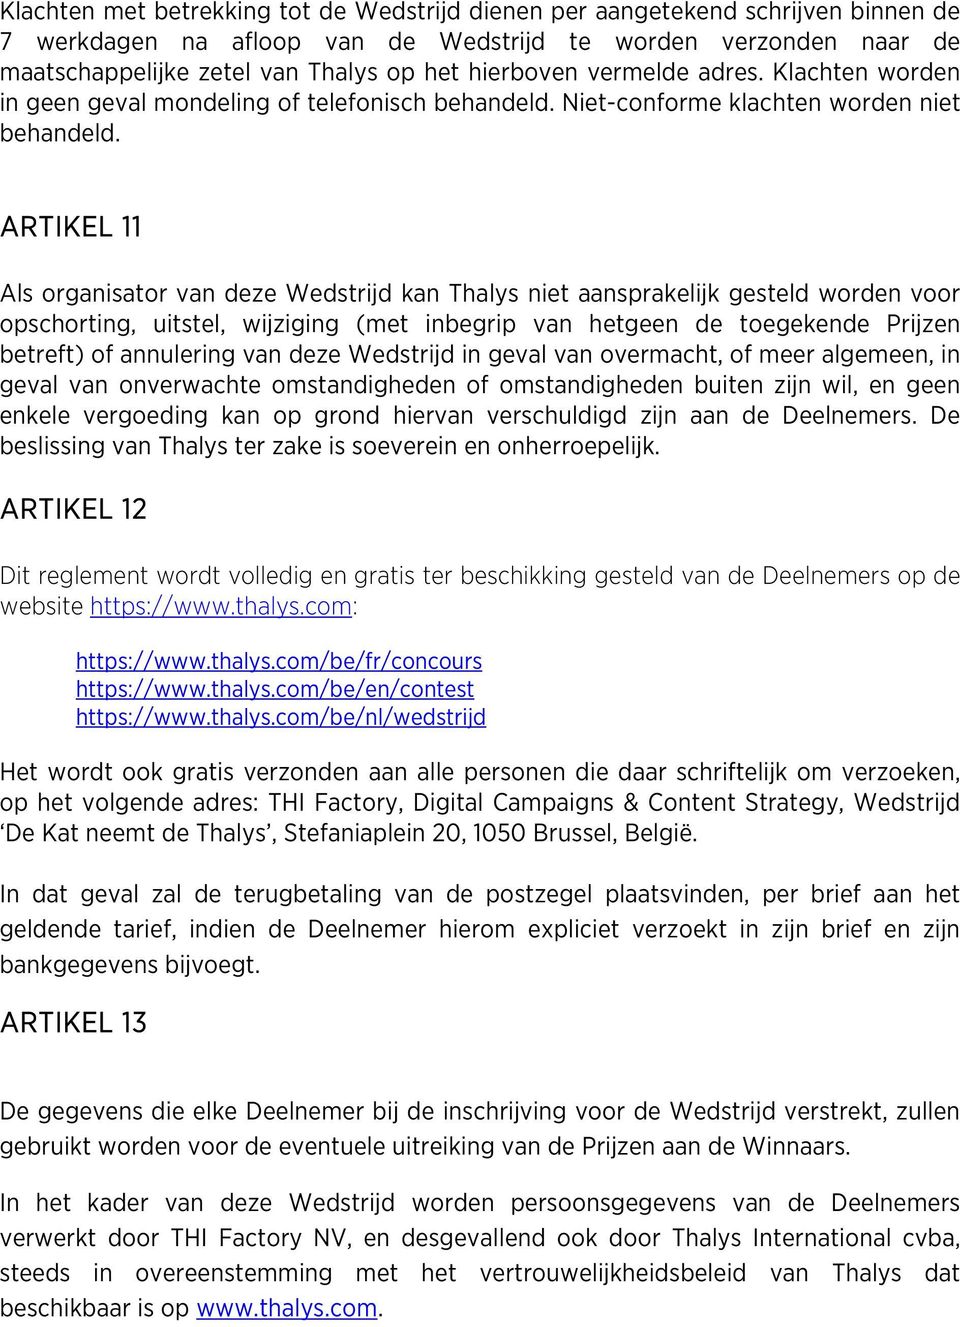 ARTIKEL 11 Als organisator van deze Wedstrijd kan Thalys niet aansprakelijk gesteld worden voor opschorting, uitstel, wijziging (met inbegrip van hetgeen de toegekende Prijzen betreft) of annulering